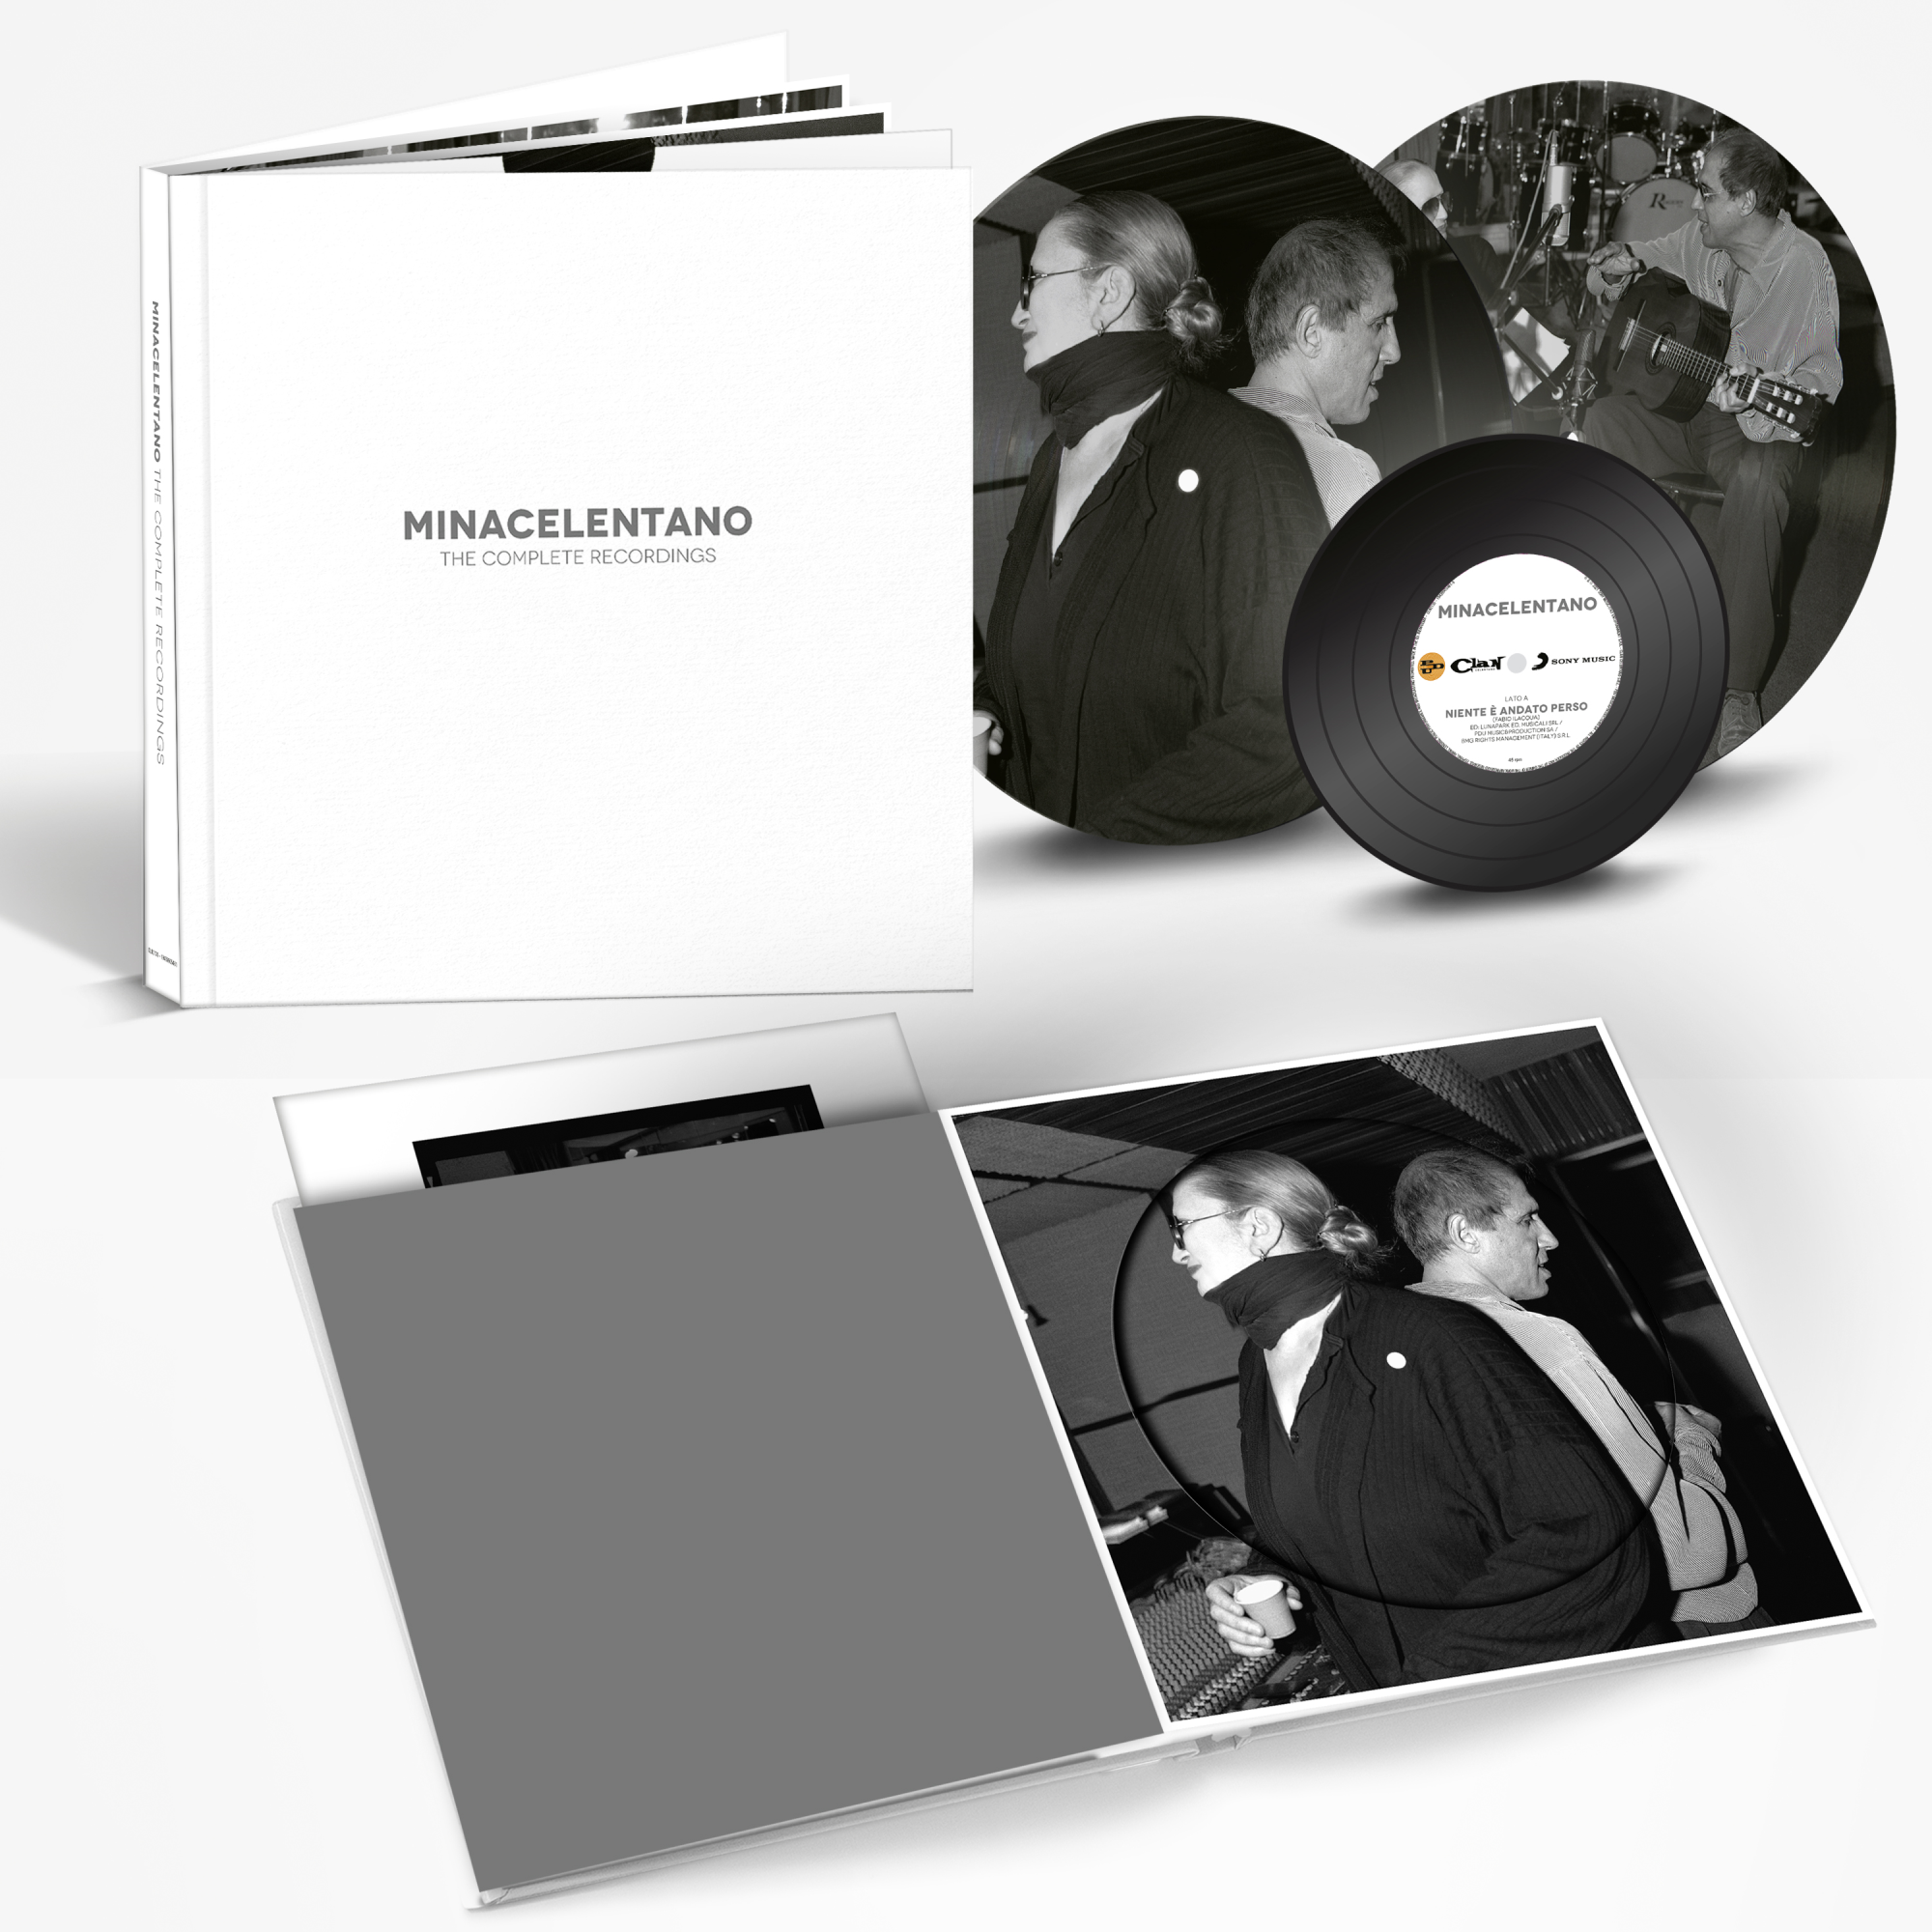 Vinile Minacelentano - The Complete Recordings (Deluxe Special Book) (Picture Disc) (2 Lp+7") NUOVO SIGILLATO, EDIZIONE DEL 10/12/2021 SUBITO DISPONIBILE